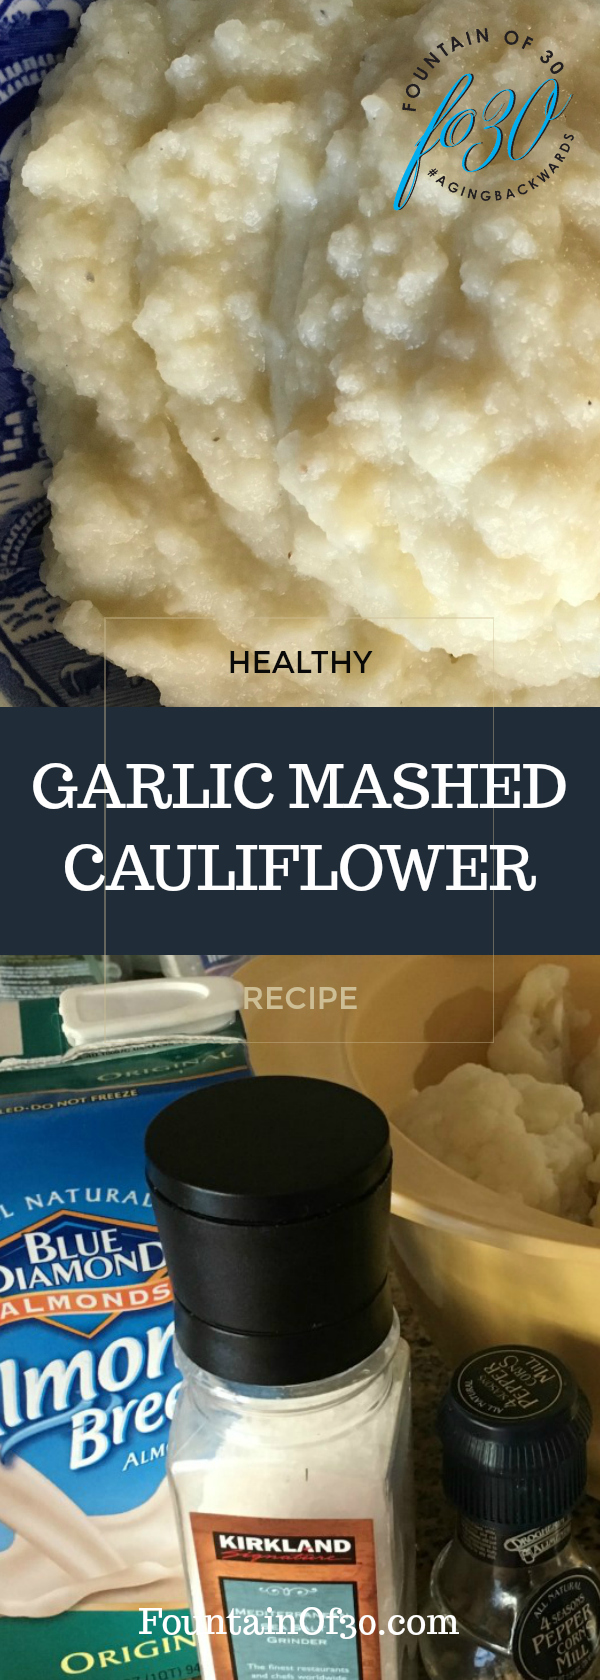 Garlic Mashed Cauliflower fountainof30